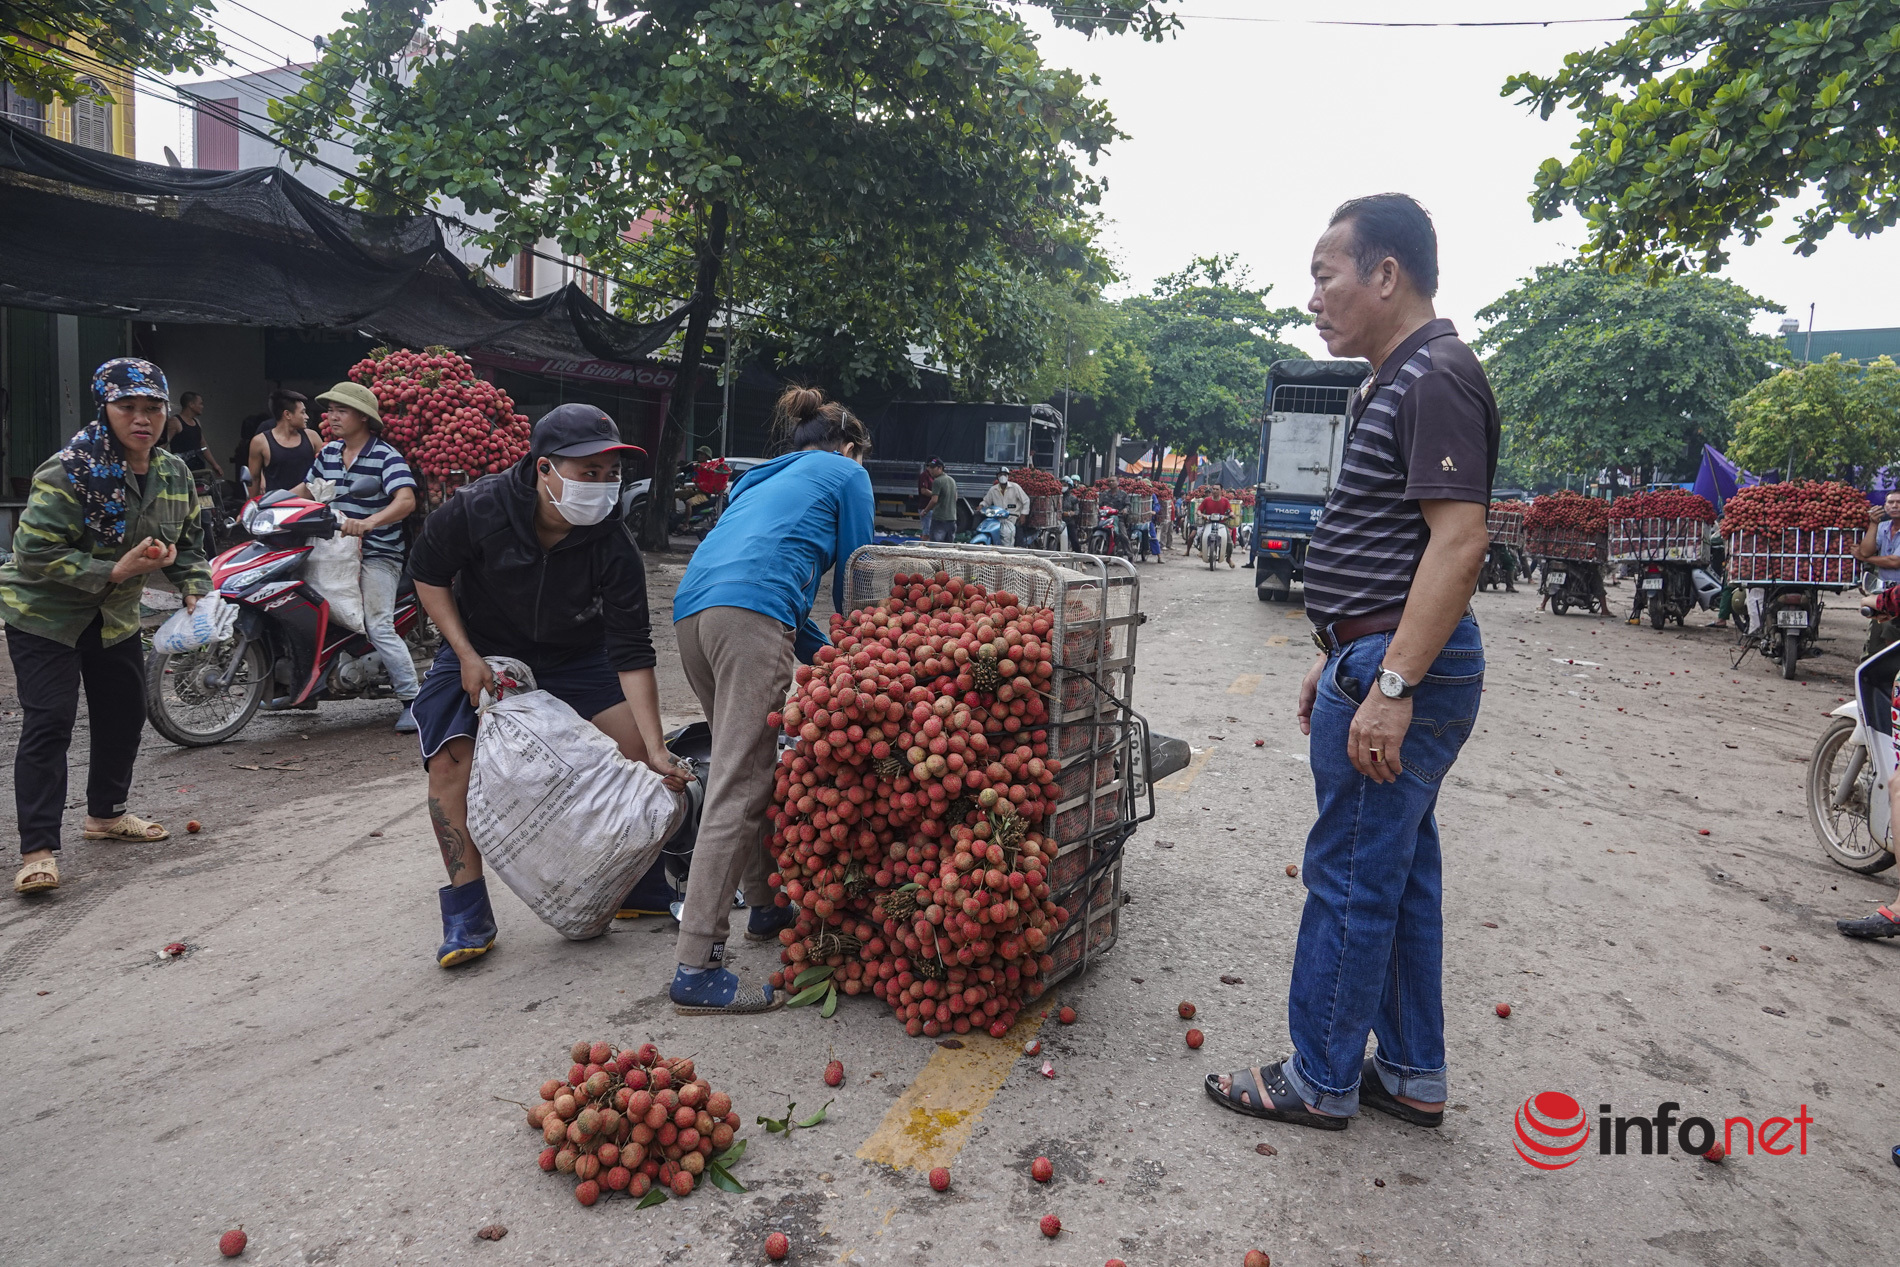 Bắc Giang: Vải vào vụ chín đỏ vườn, 5h sáng phóng xe máy cõng gần 2 tạ quả đi đổ buôn, quốc lộ 31 tắc dài